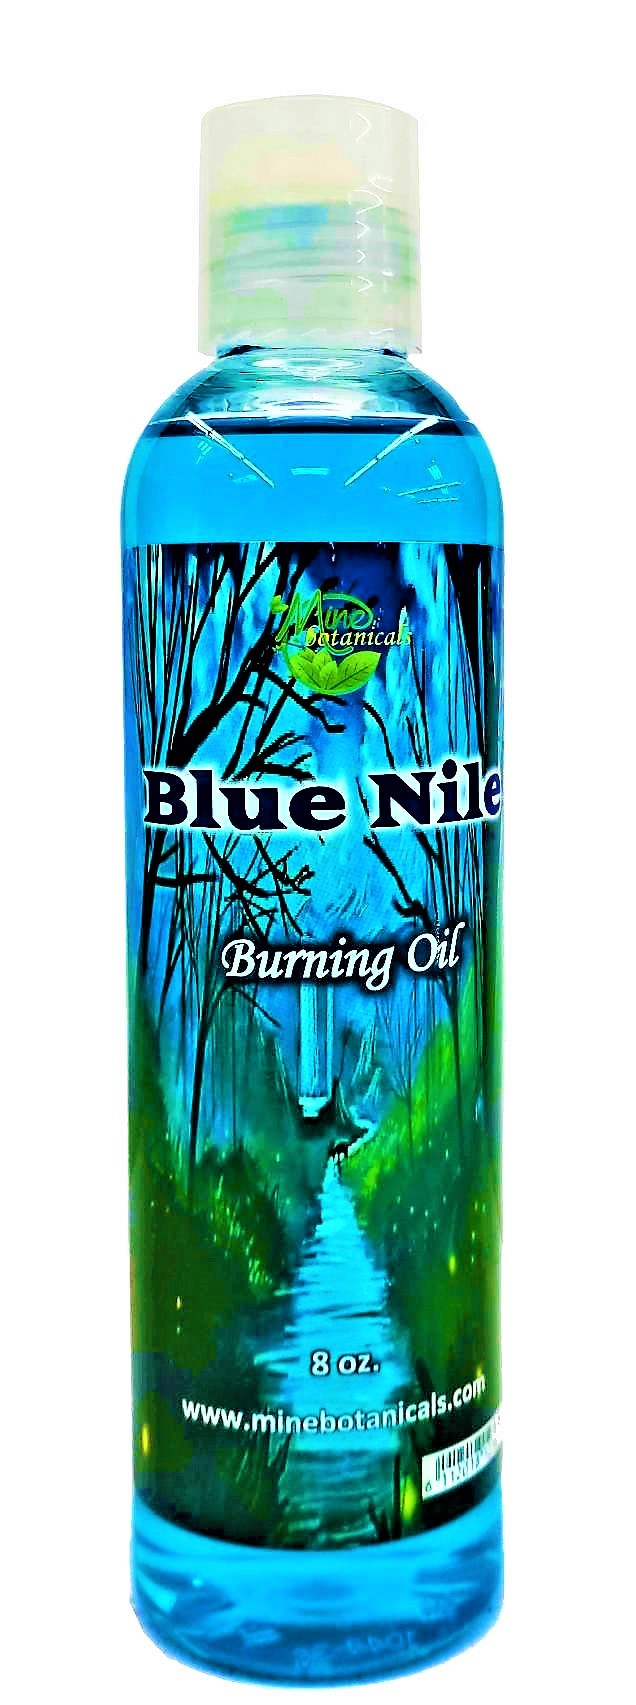 Blue Nile Burning Oil